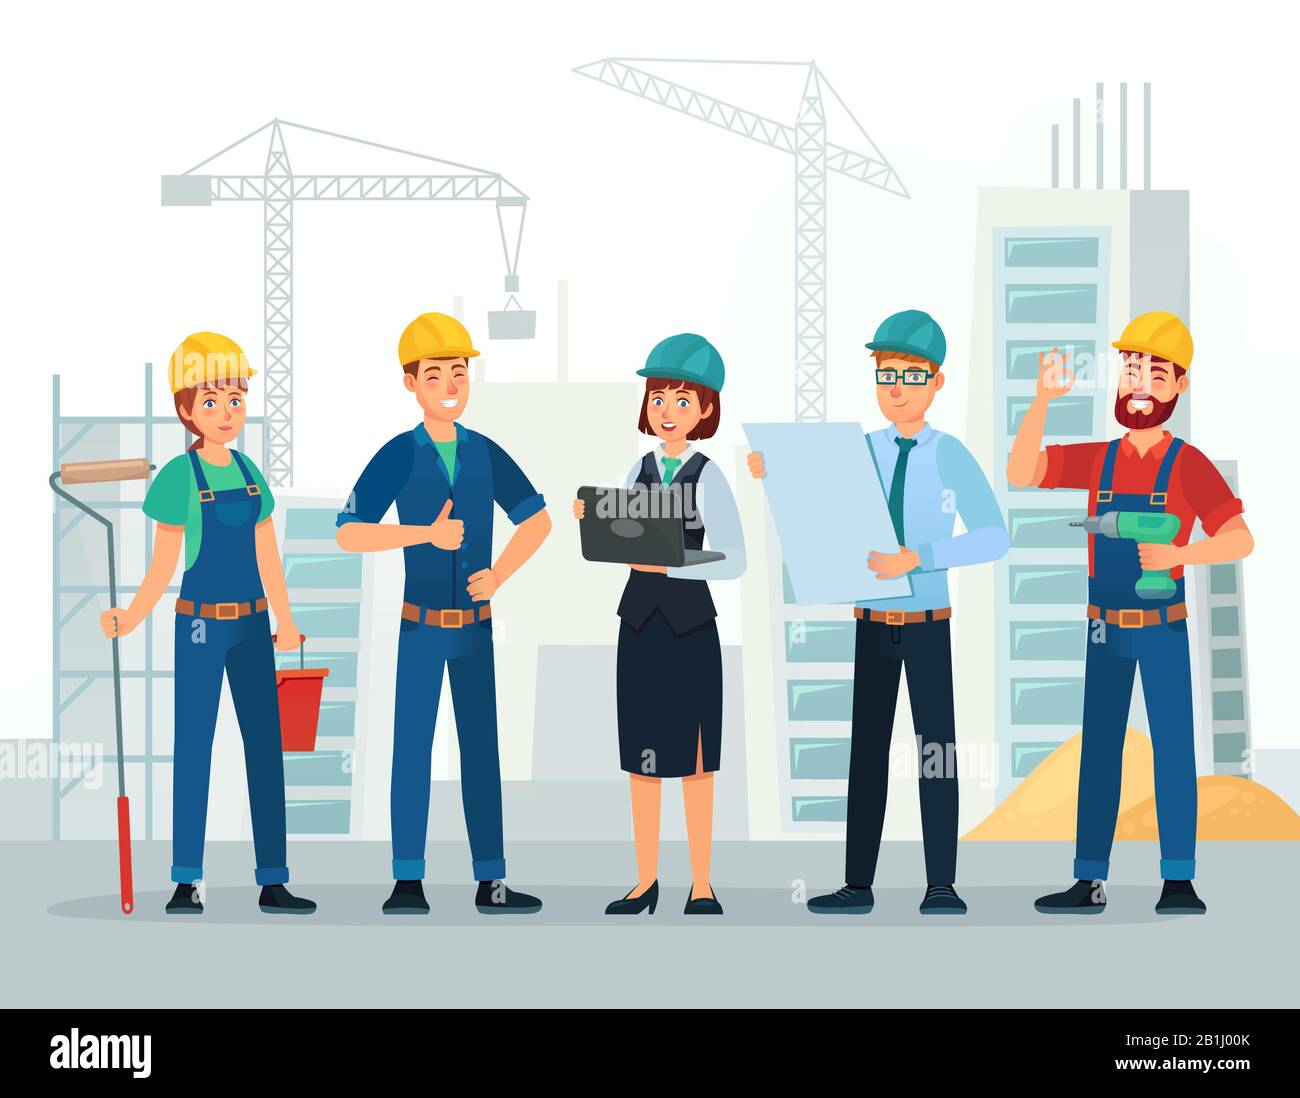 Bauteam. Ingenieur- und Bauarbeiter, Bauingenieurgruppe und Techniker Menschen Cartoon-Vektor-Illustration Stock Vektor